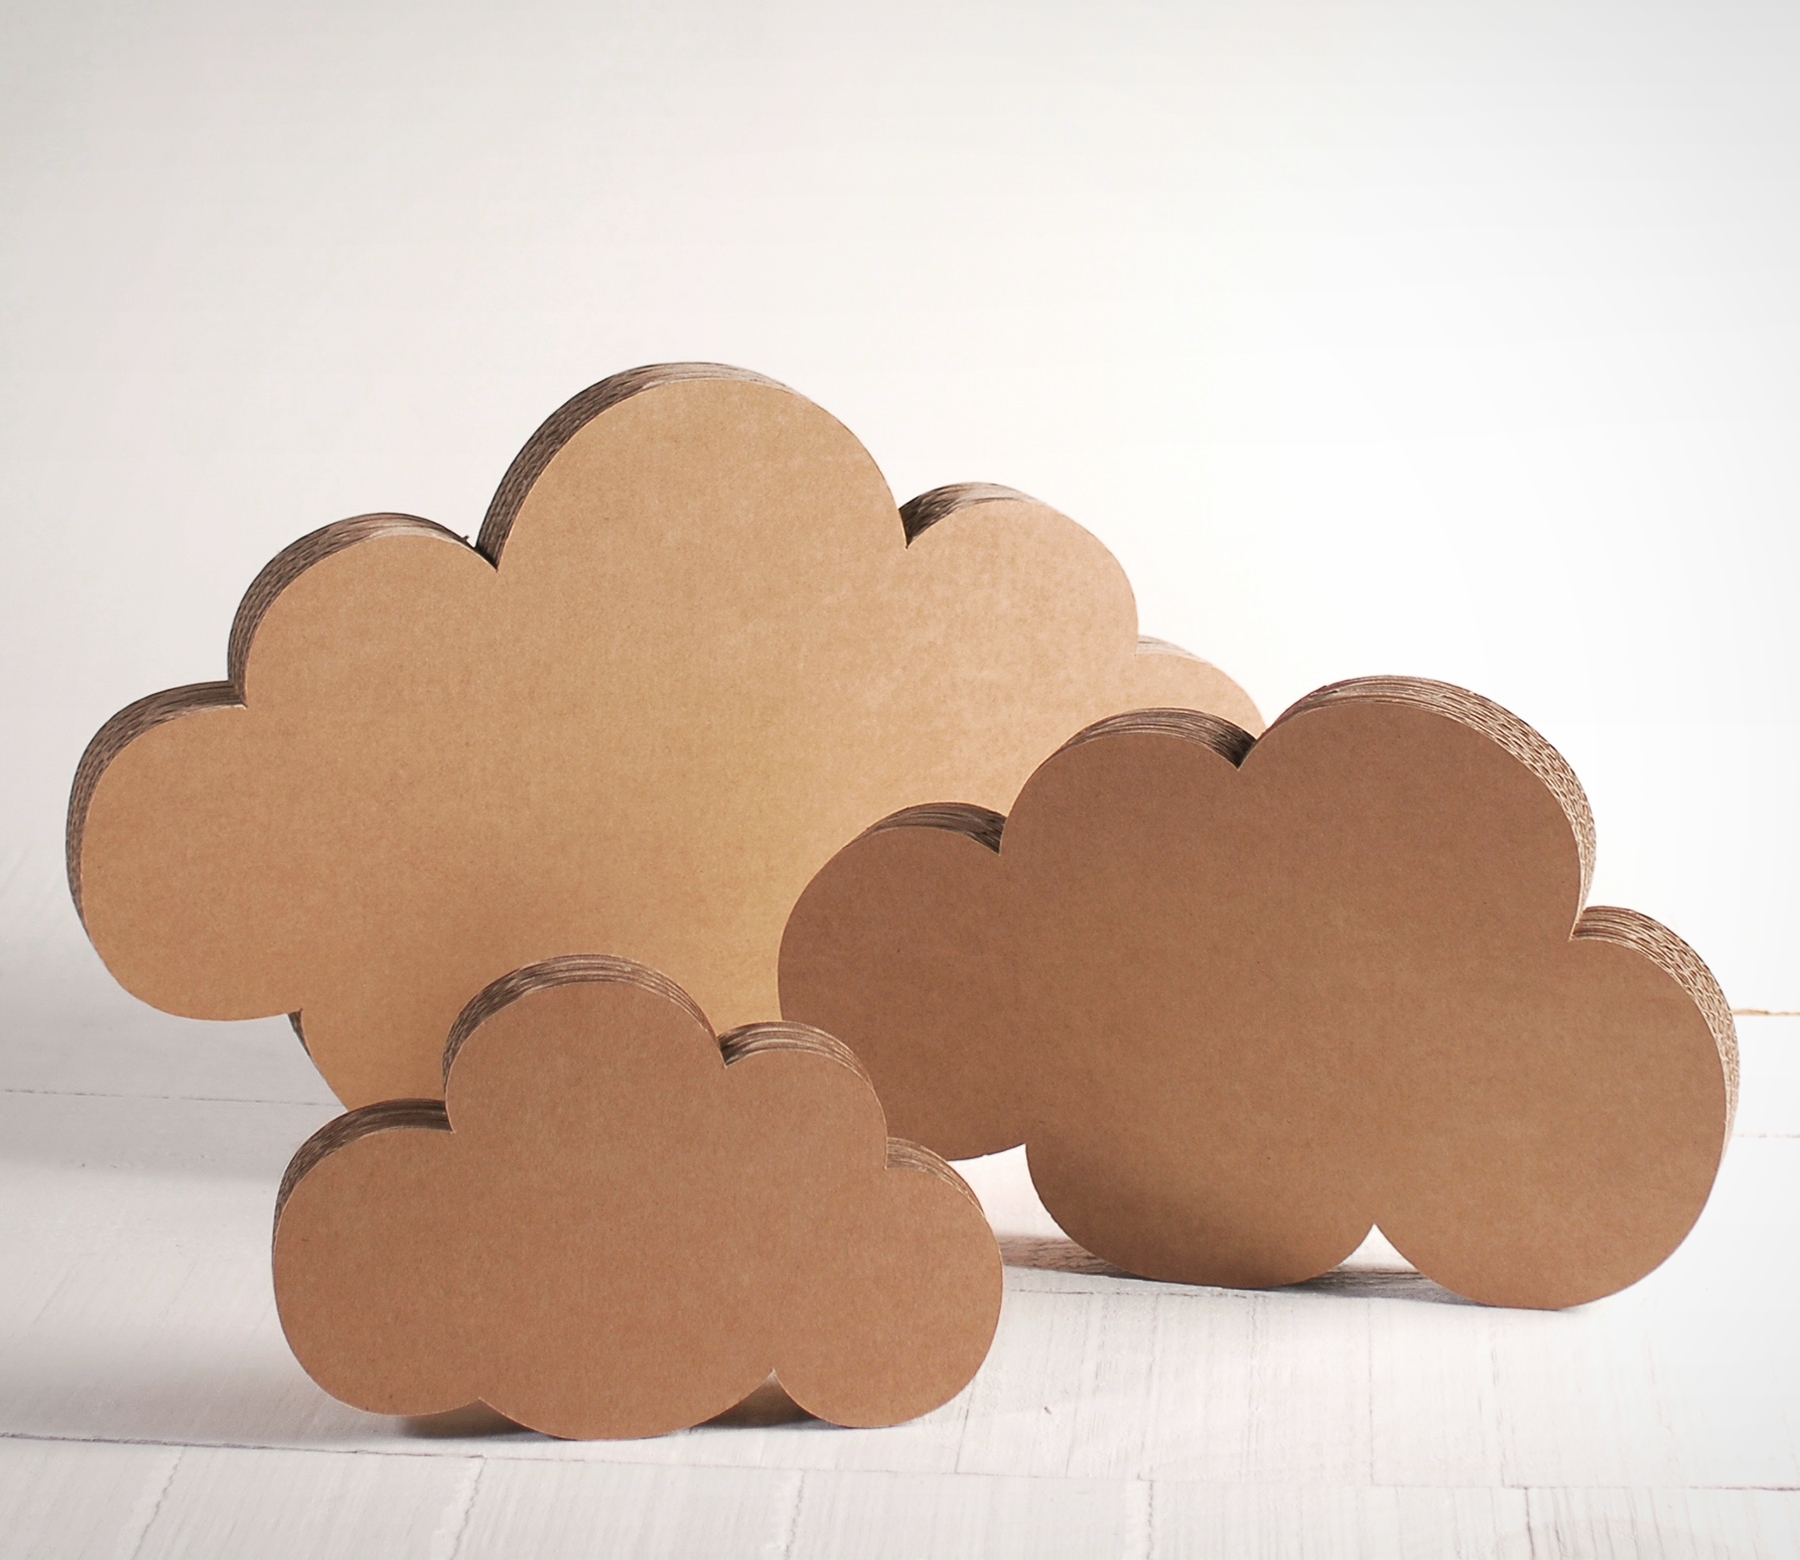 Decorative Cardboard Clouds, 3-Piece Kit!